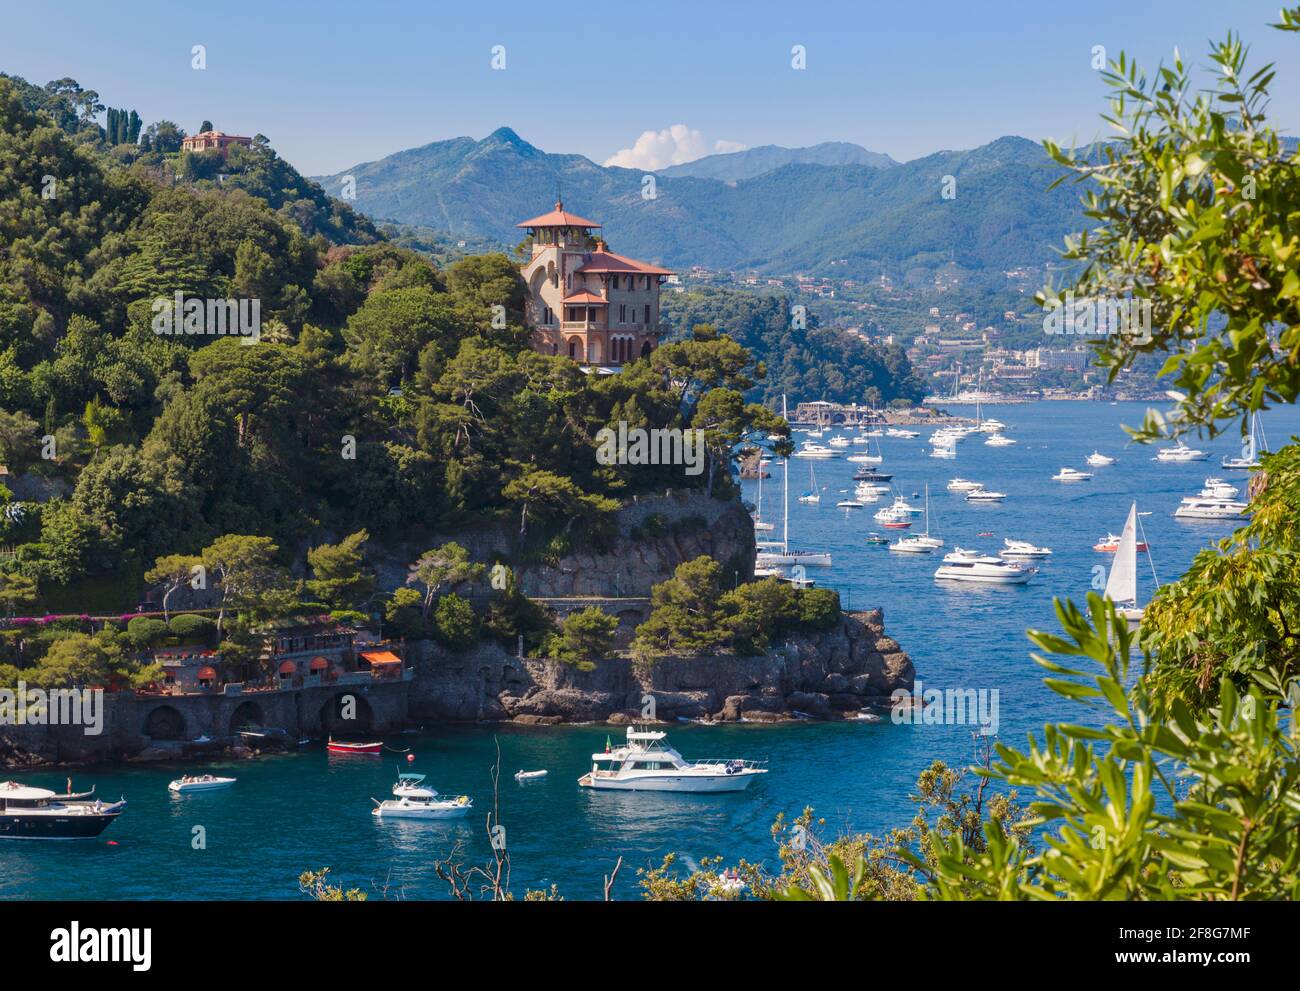 Portofino, Provinz Genua, Italienische Riviera, Italien. Blick vom Eingang zum Hafen von Portofino über den Golf von Tigullio in Richtung Santa M Stockfoto